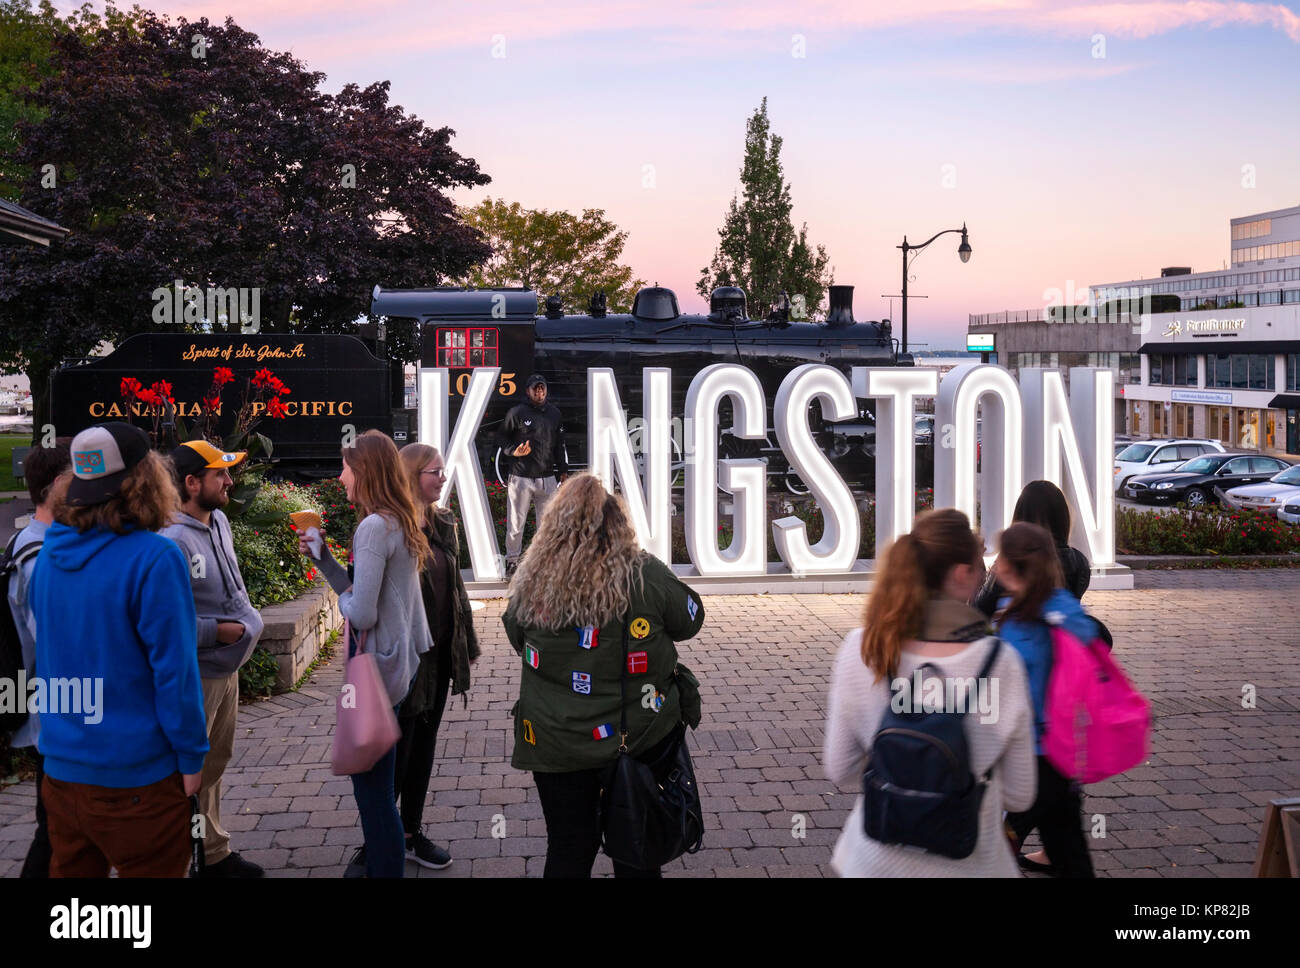 Une enseigne lumineuse au crépuscule de Kingston a appelé le 'I' à Kingston est une attraction touristique avec de jeunes gens (touristes) rassemblement pour prendre des photos. Banque D'Images